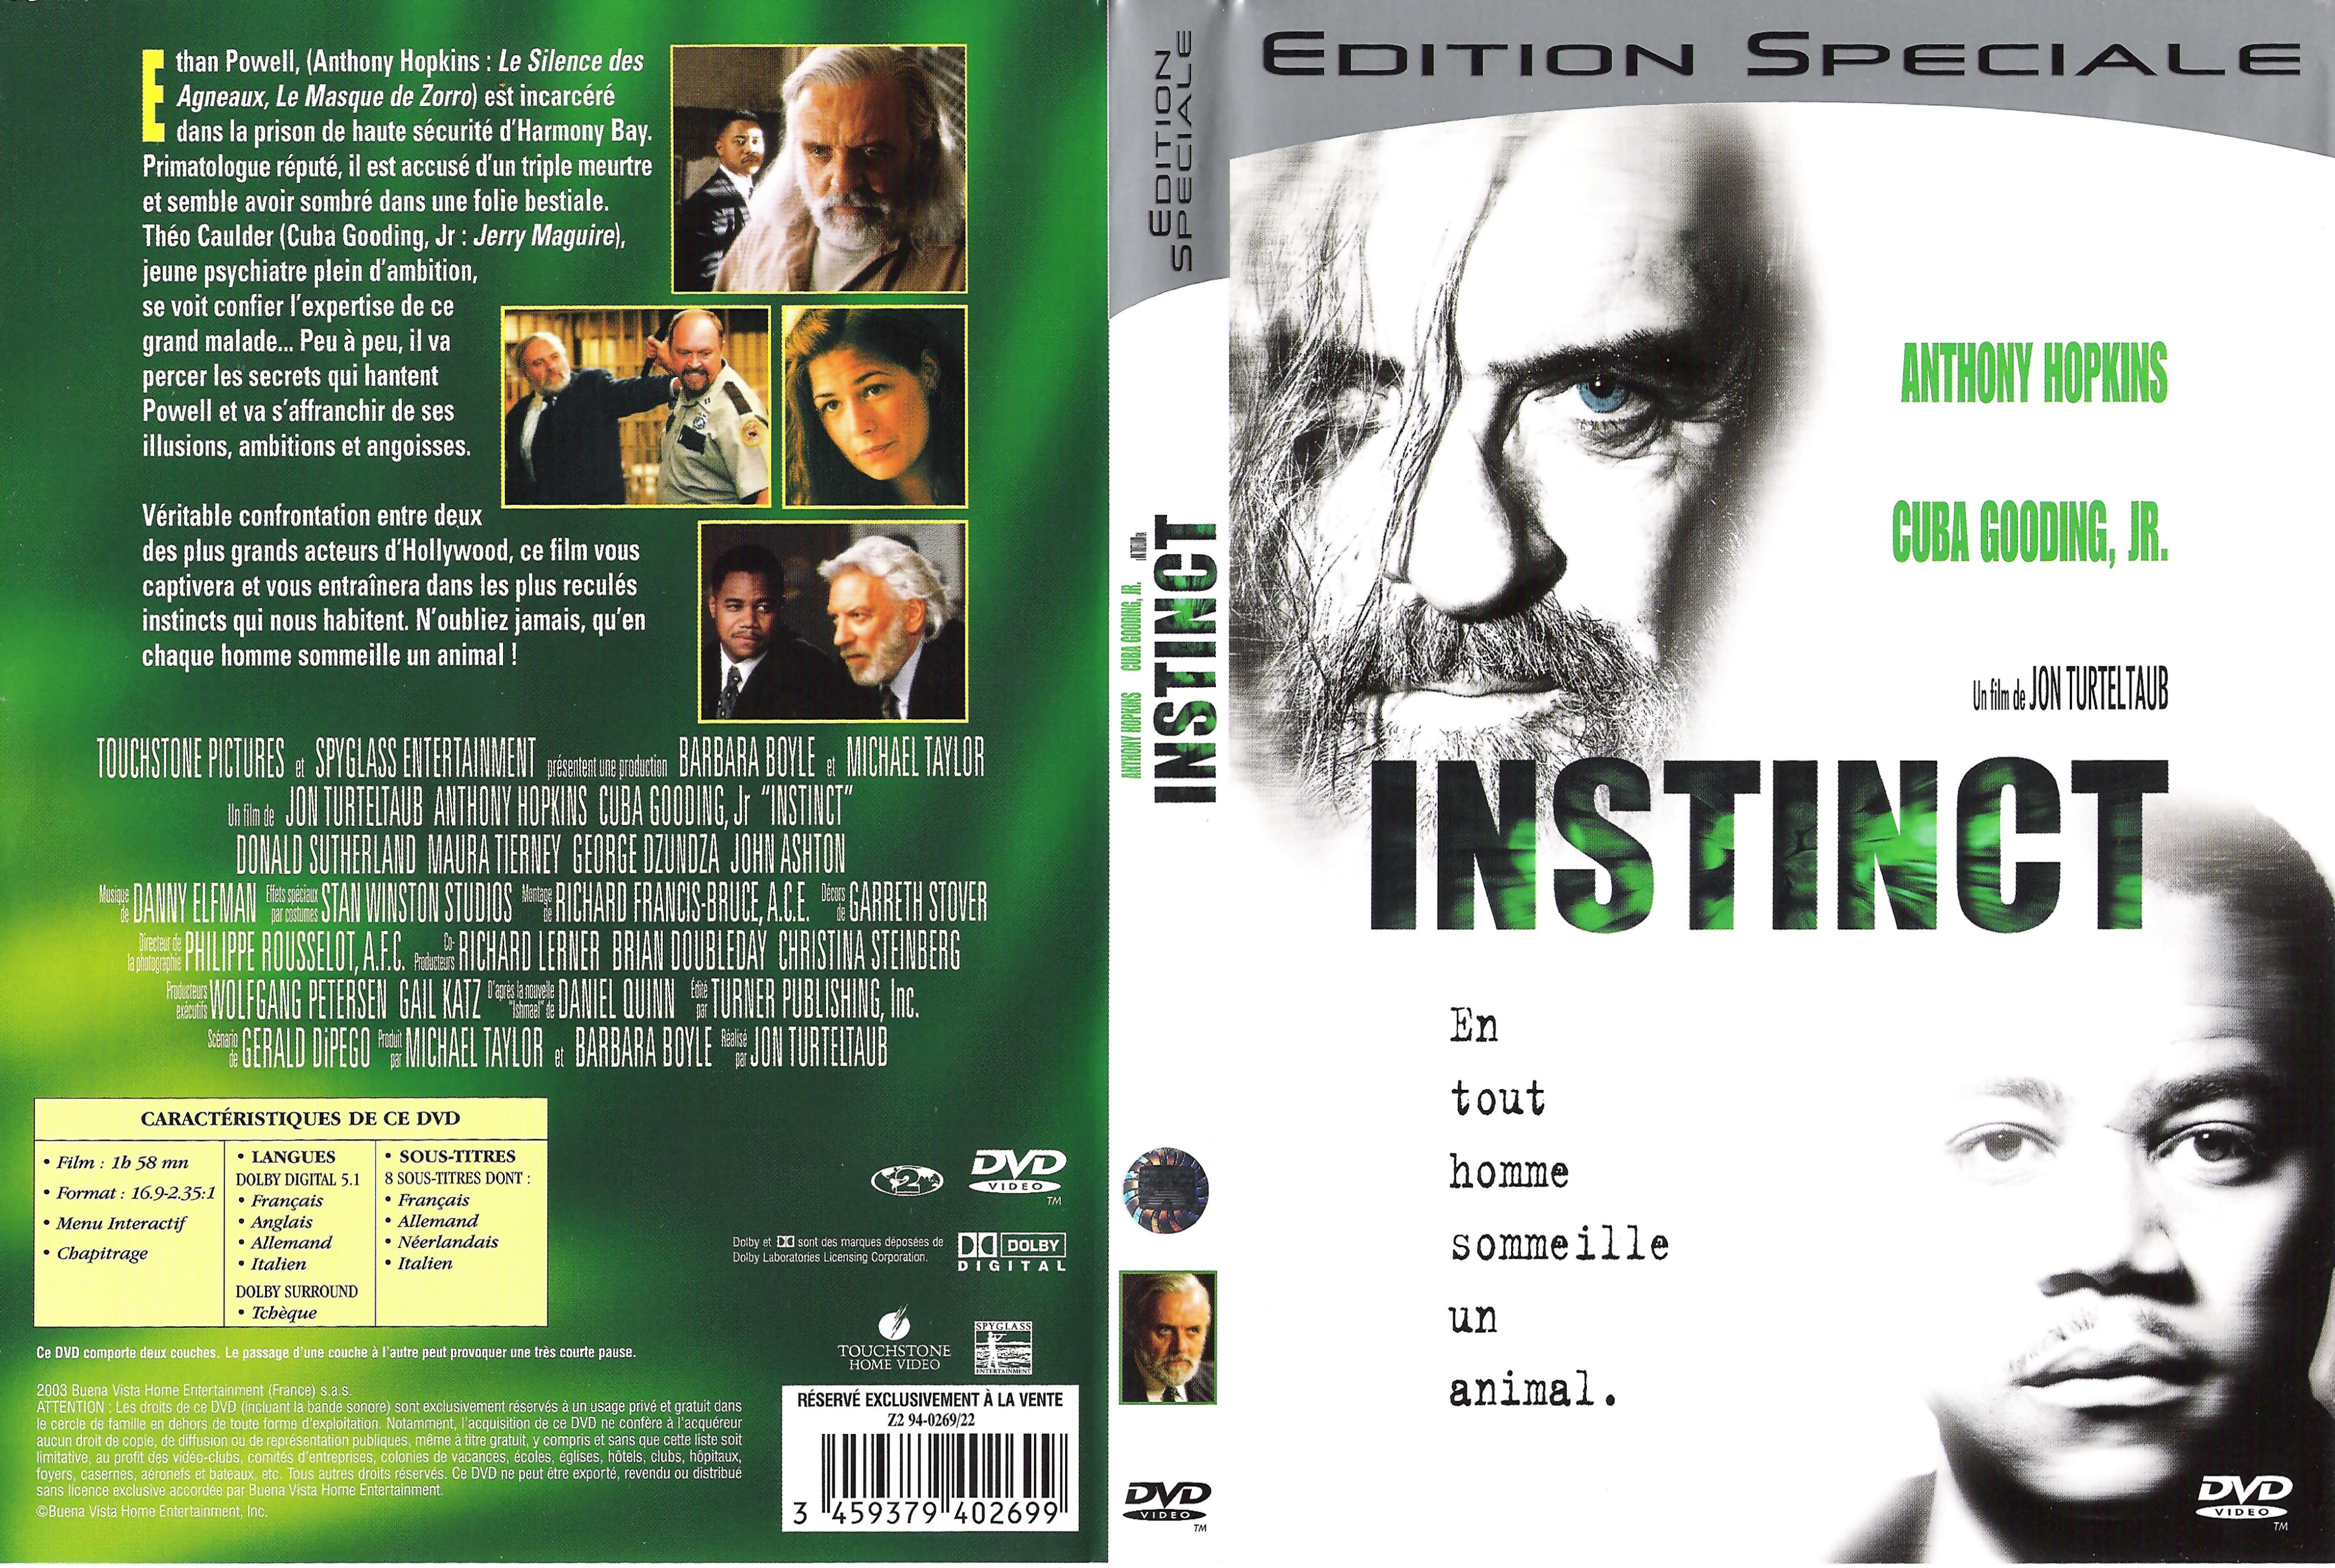 Jaquette DVD Instinct v2